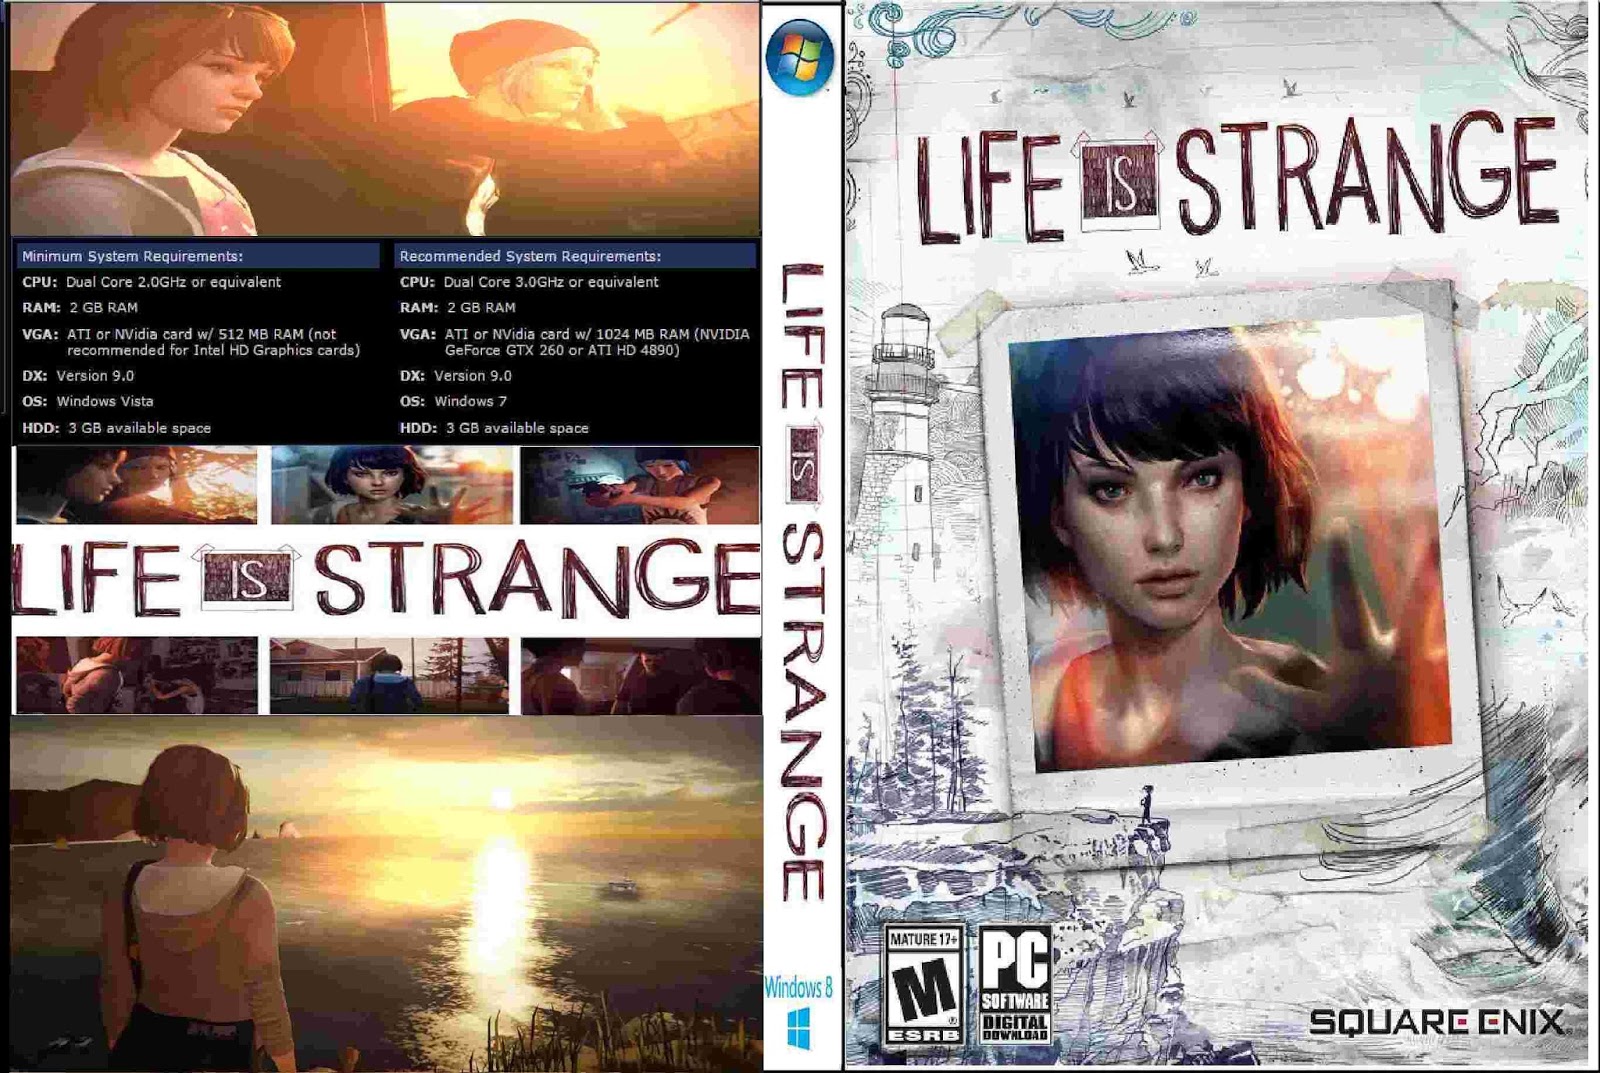 Life is strange язык. Life is Strange 1 системные требования. Life is Strange обложка. Life is Strange обложка игры. Life is Strange обложка диска.